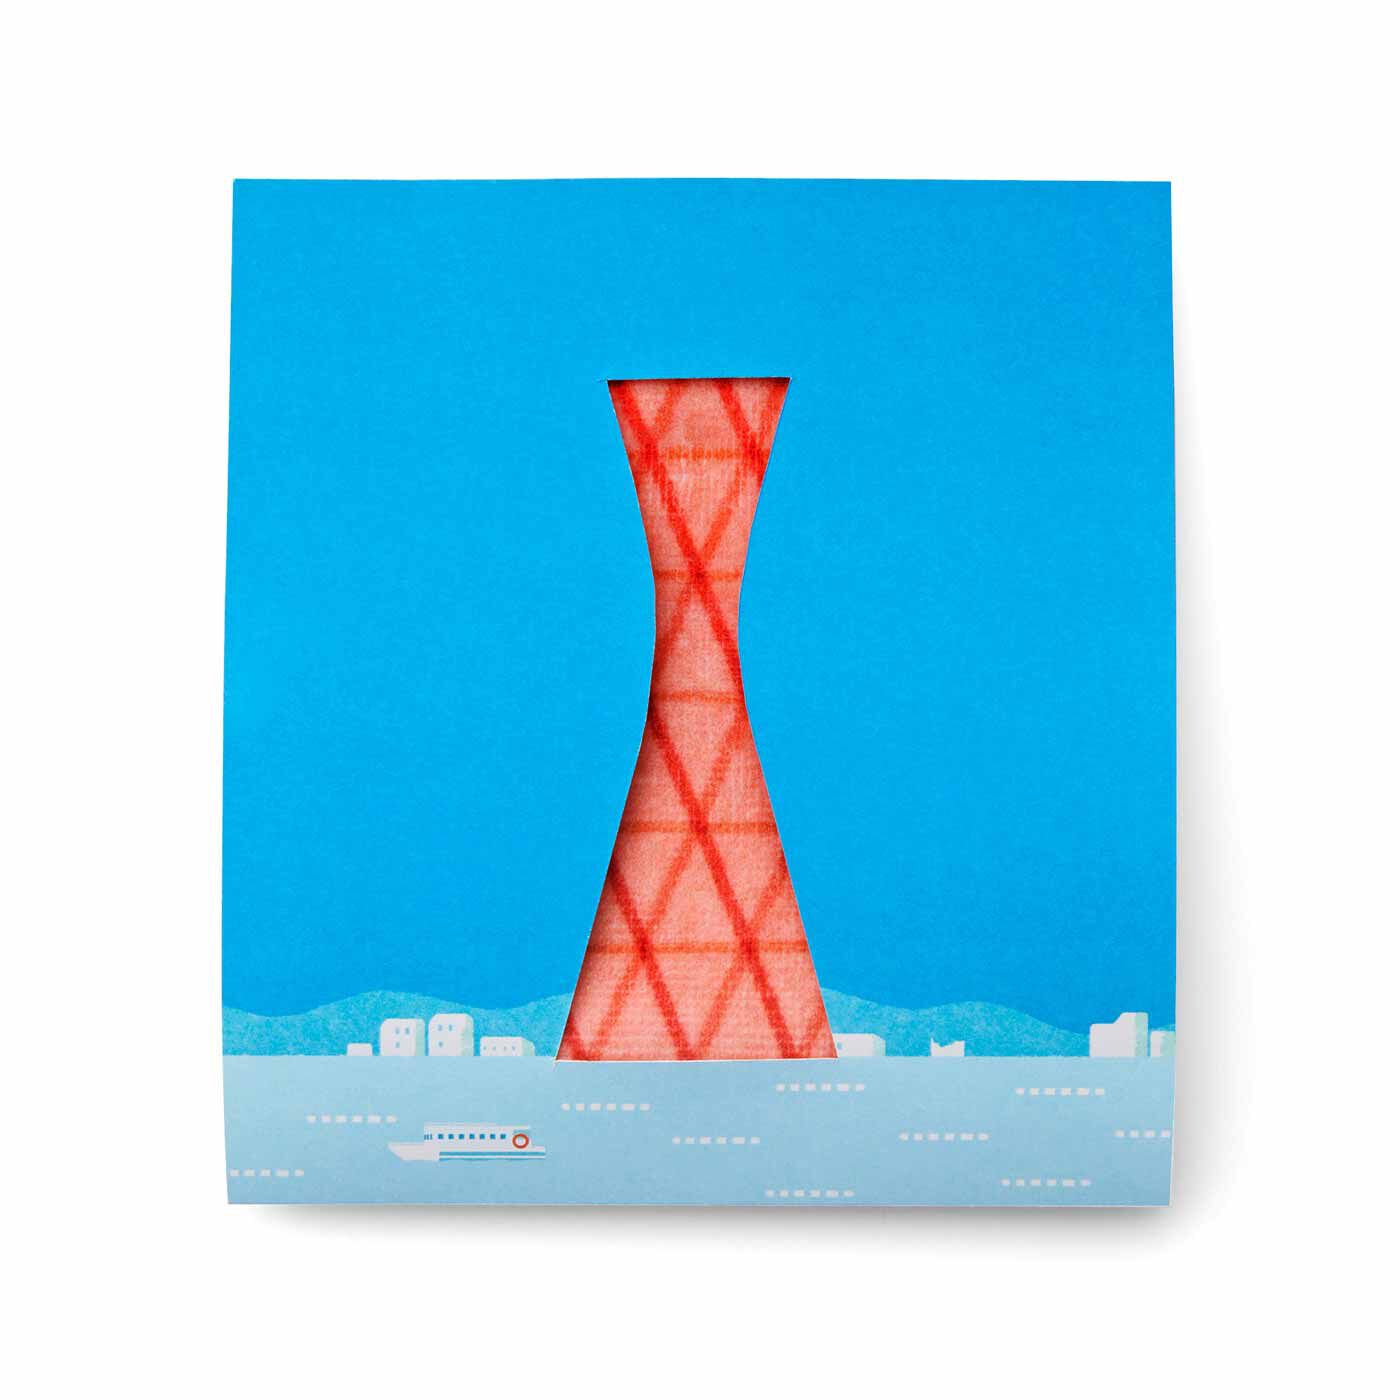 YOU+MORE!|ブリリアンス神戸基金 KOBE PORT TOWER 手のひらサイズのタワーになる 神戸ポートタワータオルハンカチの会|●お届けパッケージ